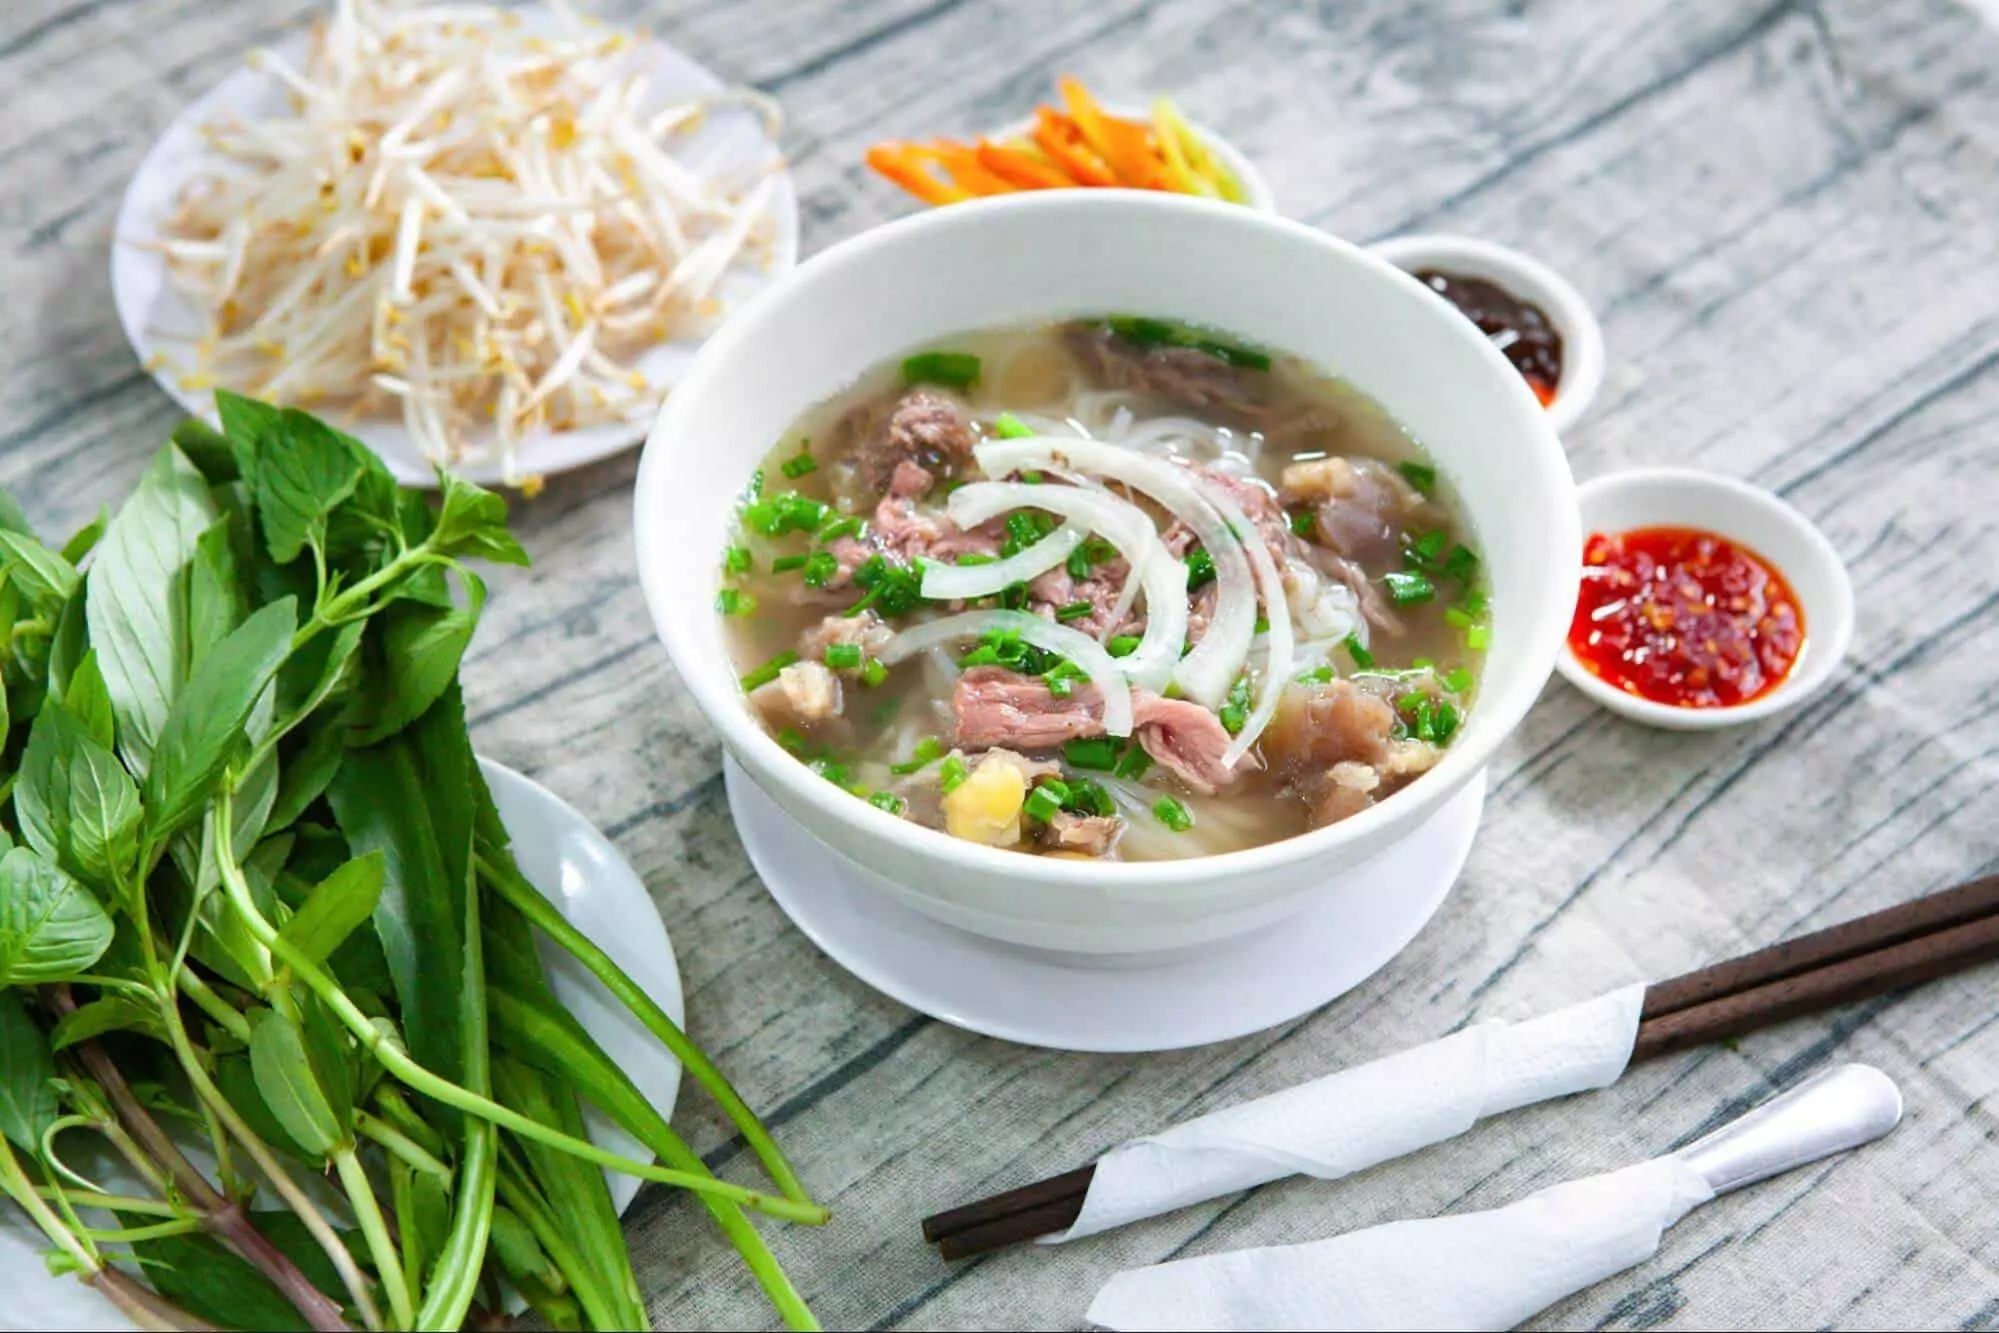 Phở là món ăn truyền thống của Việt Nam